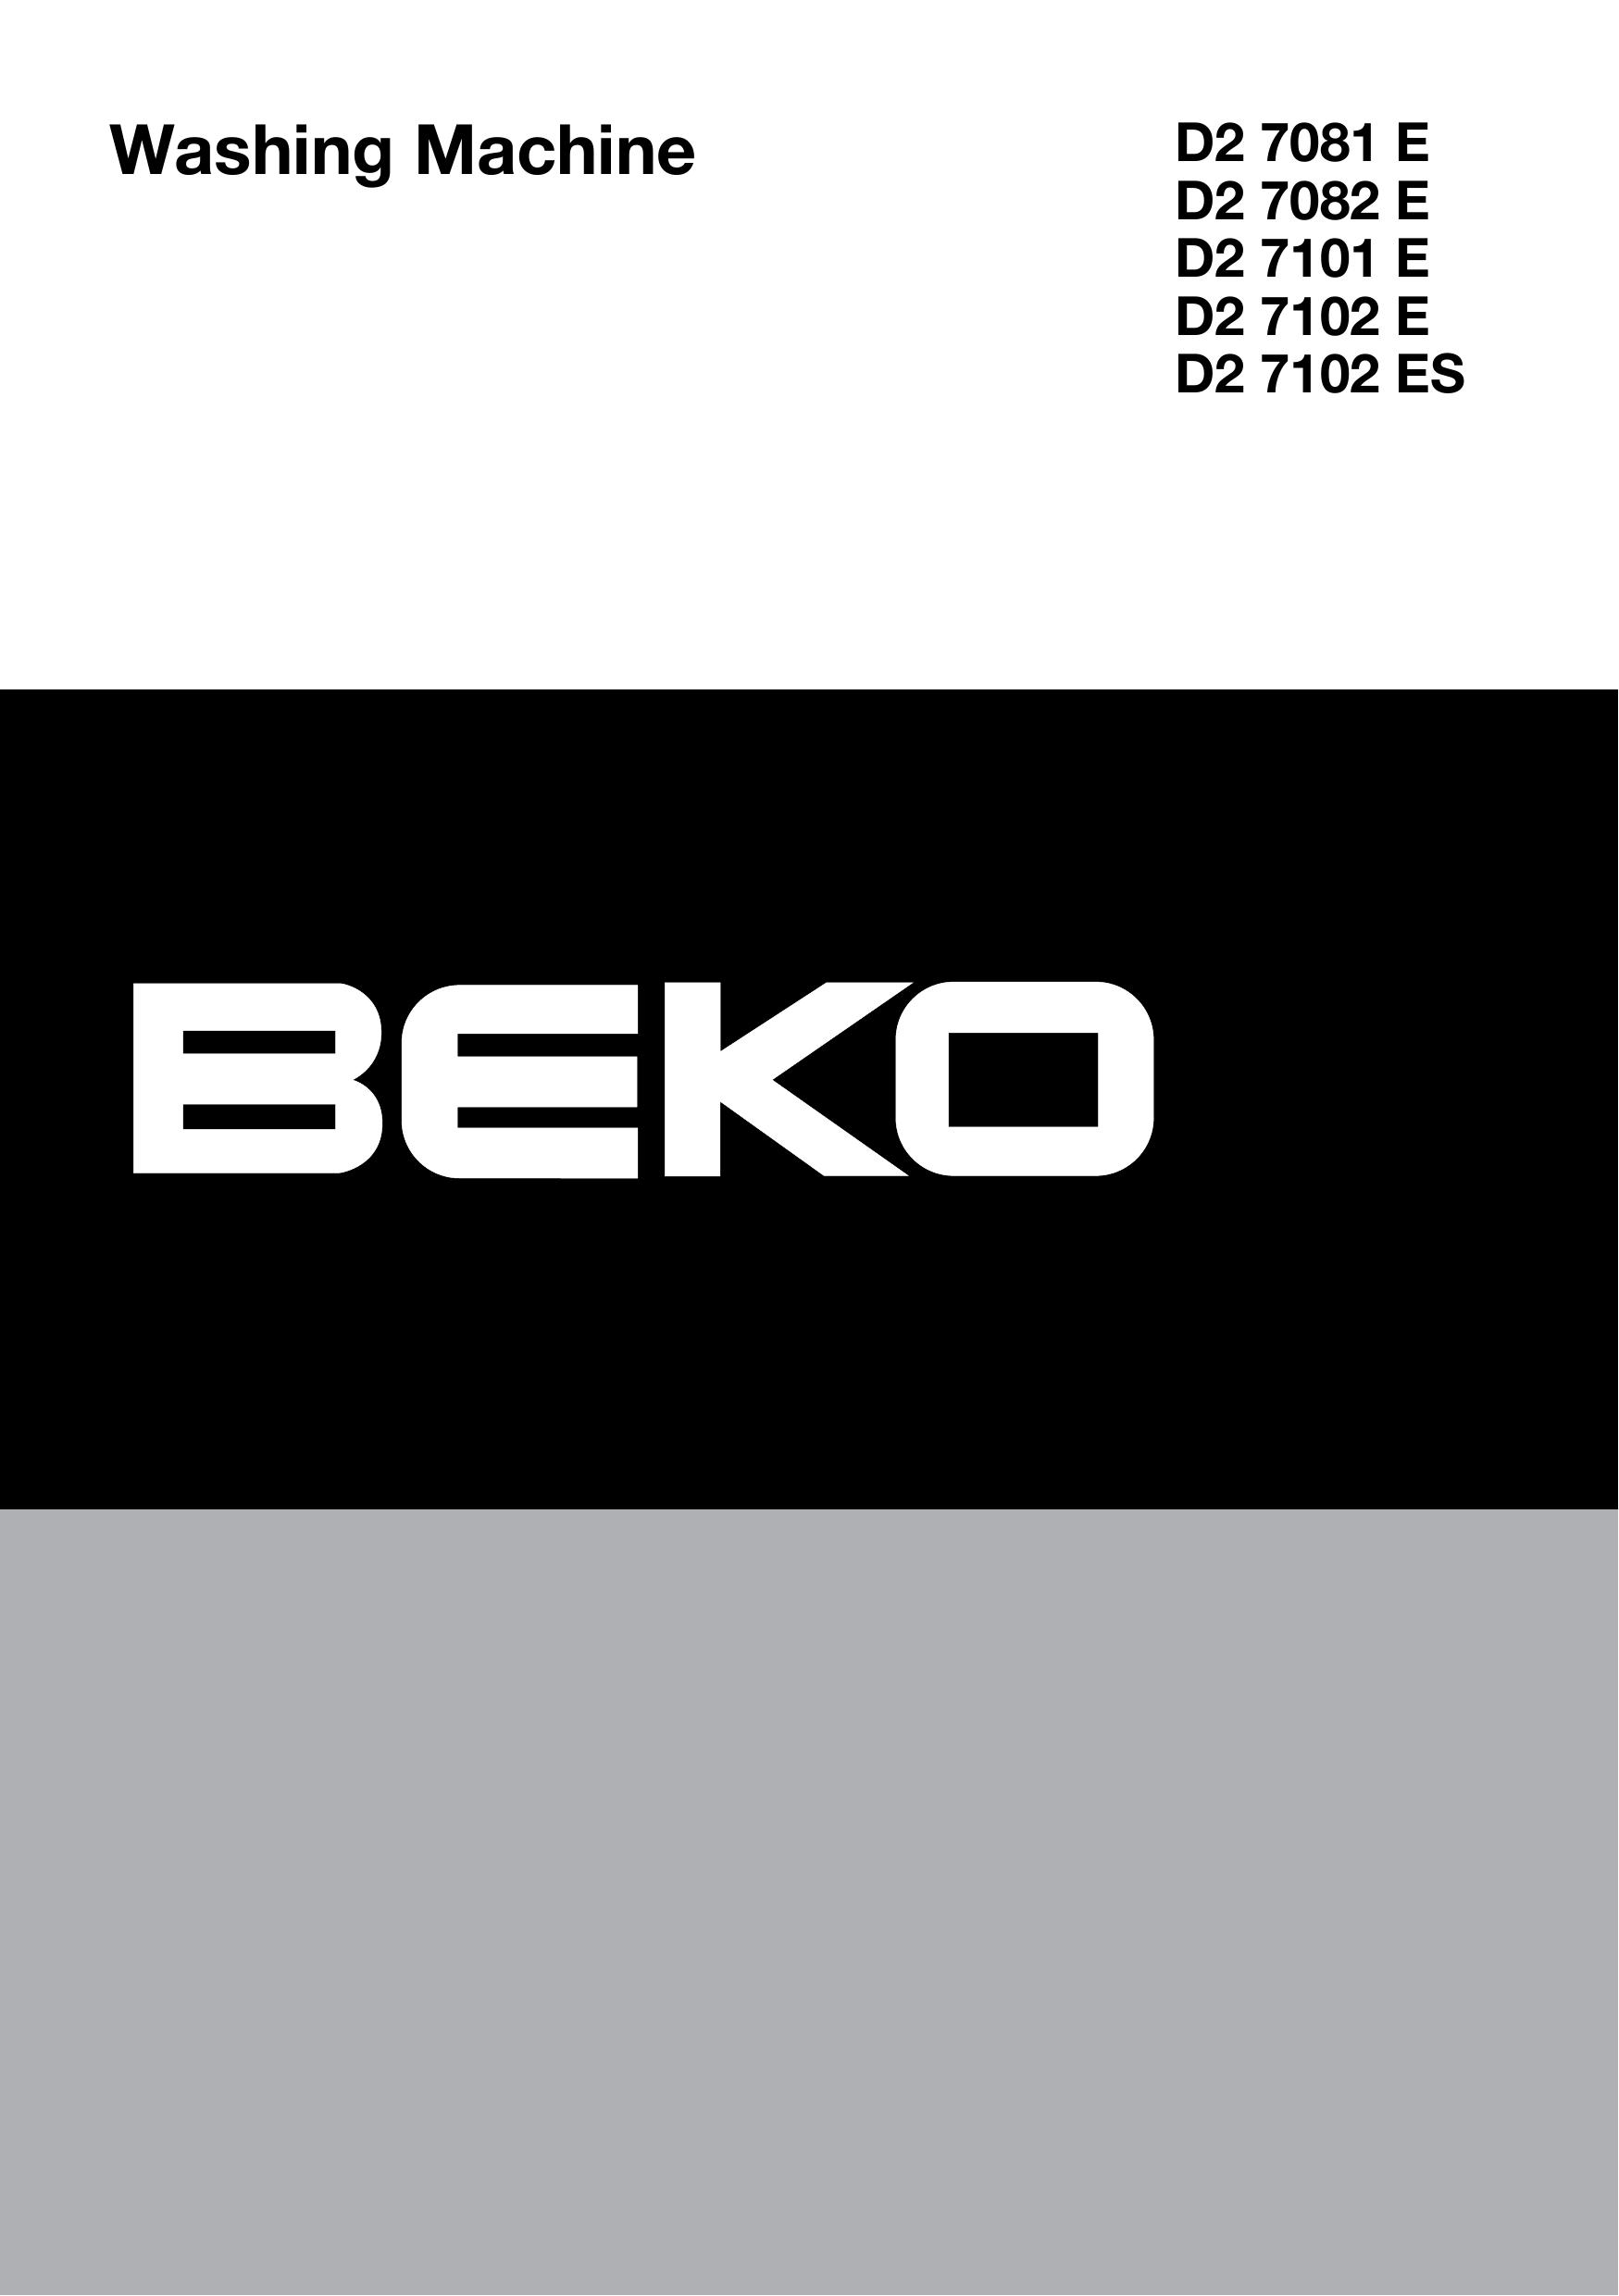 Beko D2 7102 ES Washer/Dryer User Manual